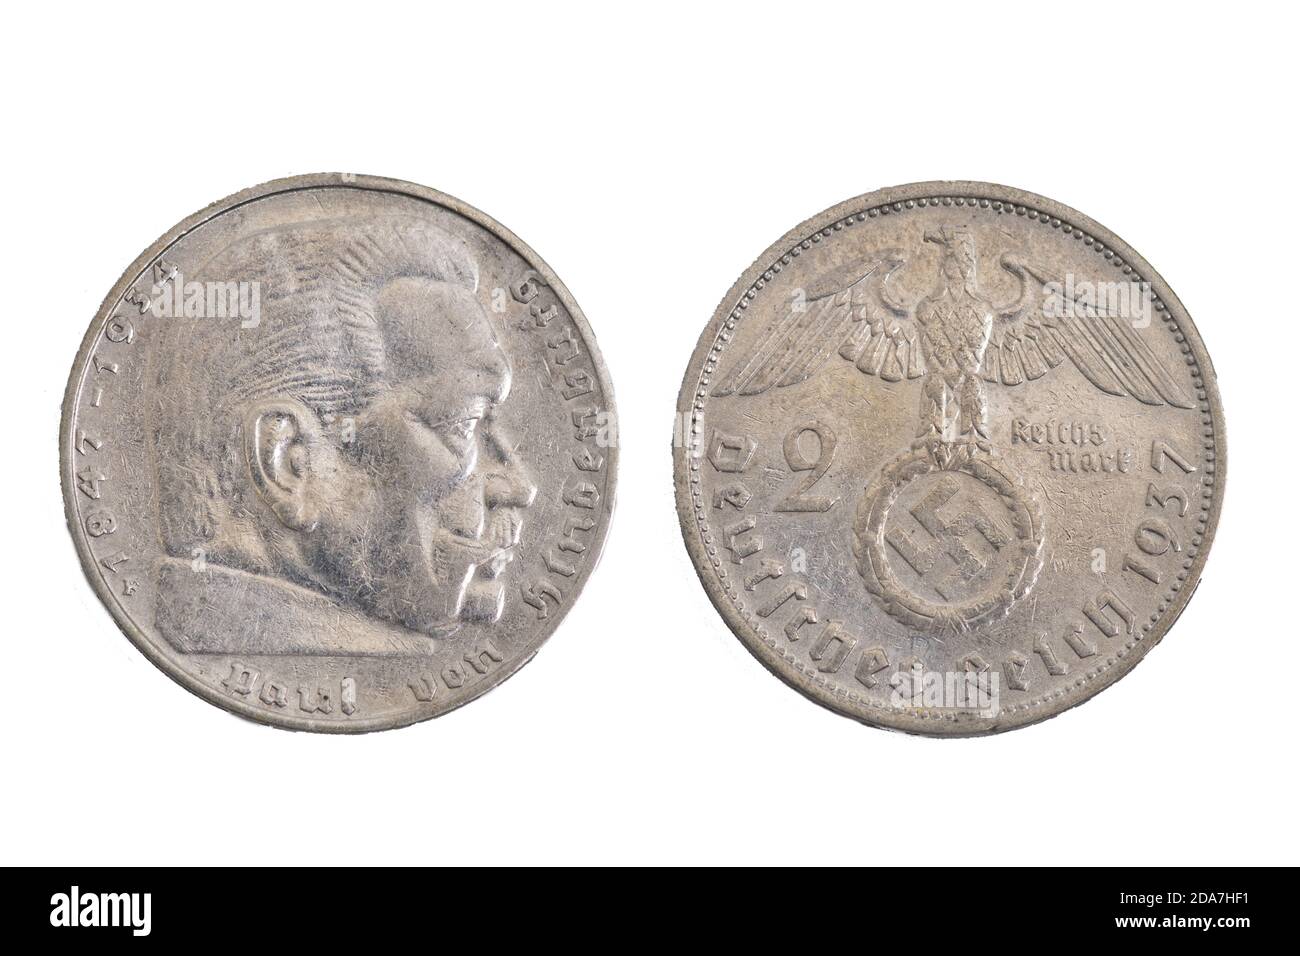 German Germany Germania Paul Von Hindenburg Silver 1937 Reich Marks old coin money Stock Photo